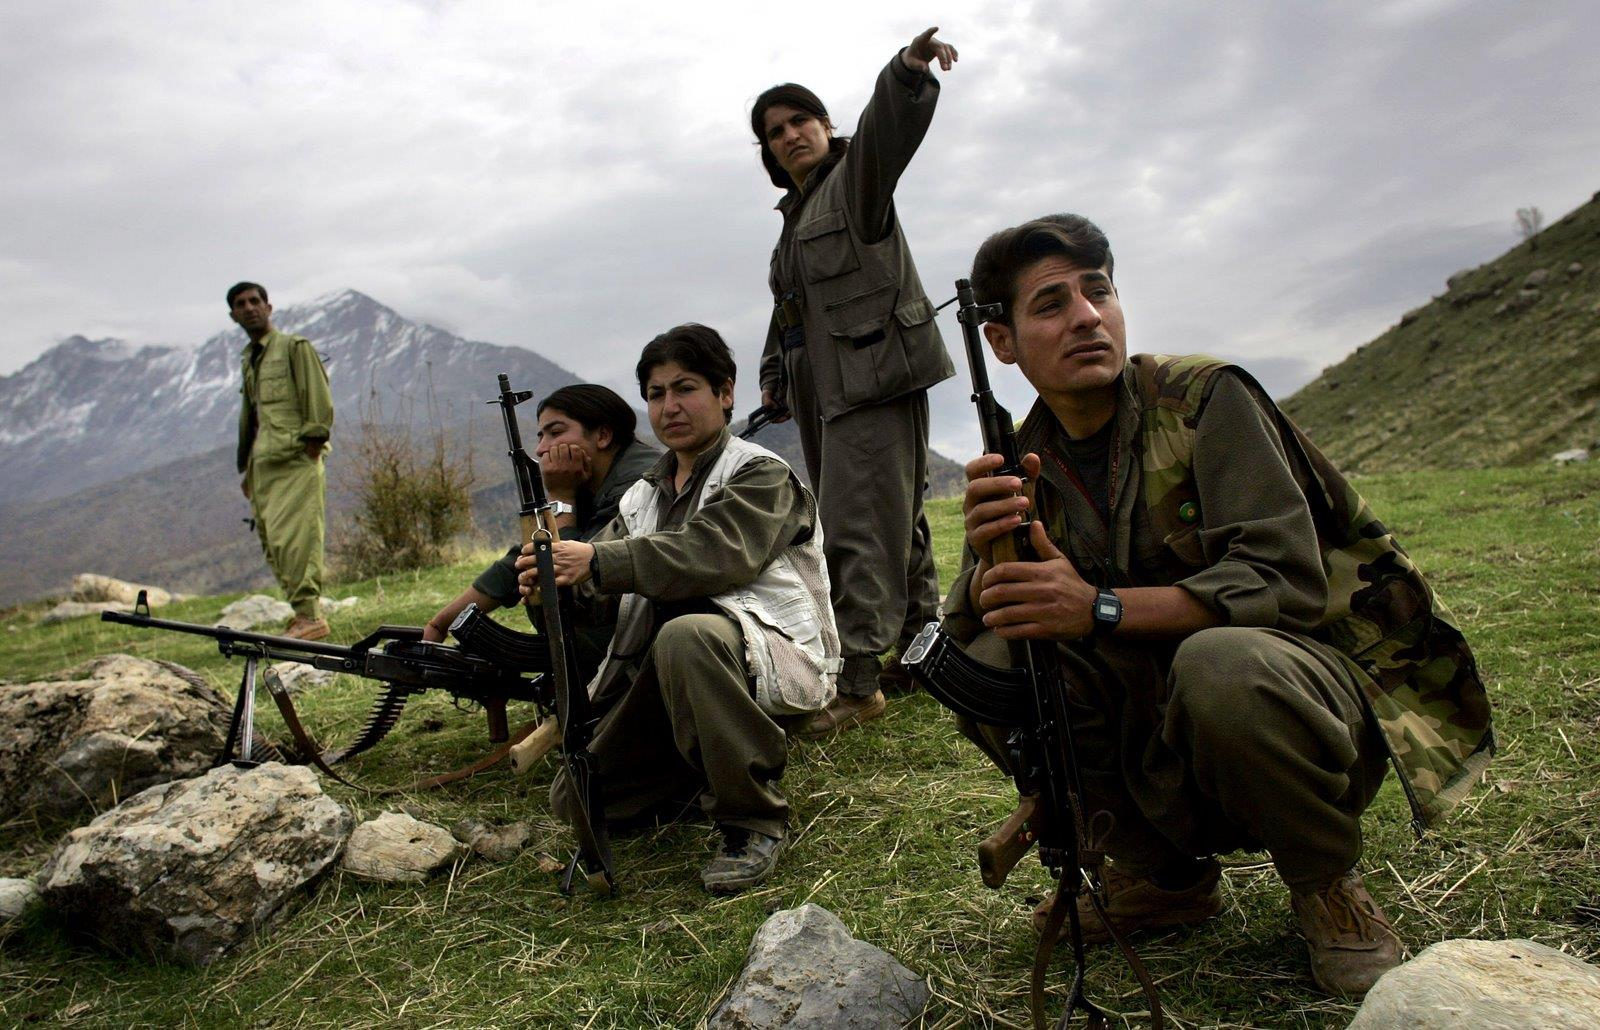 PKK yeni məkan axtarışında - Qarabağ seçilir?